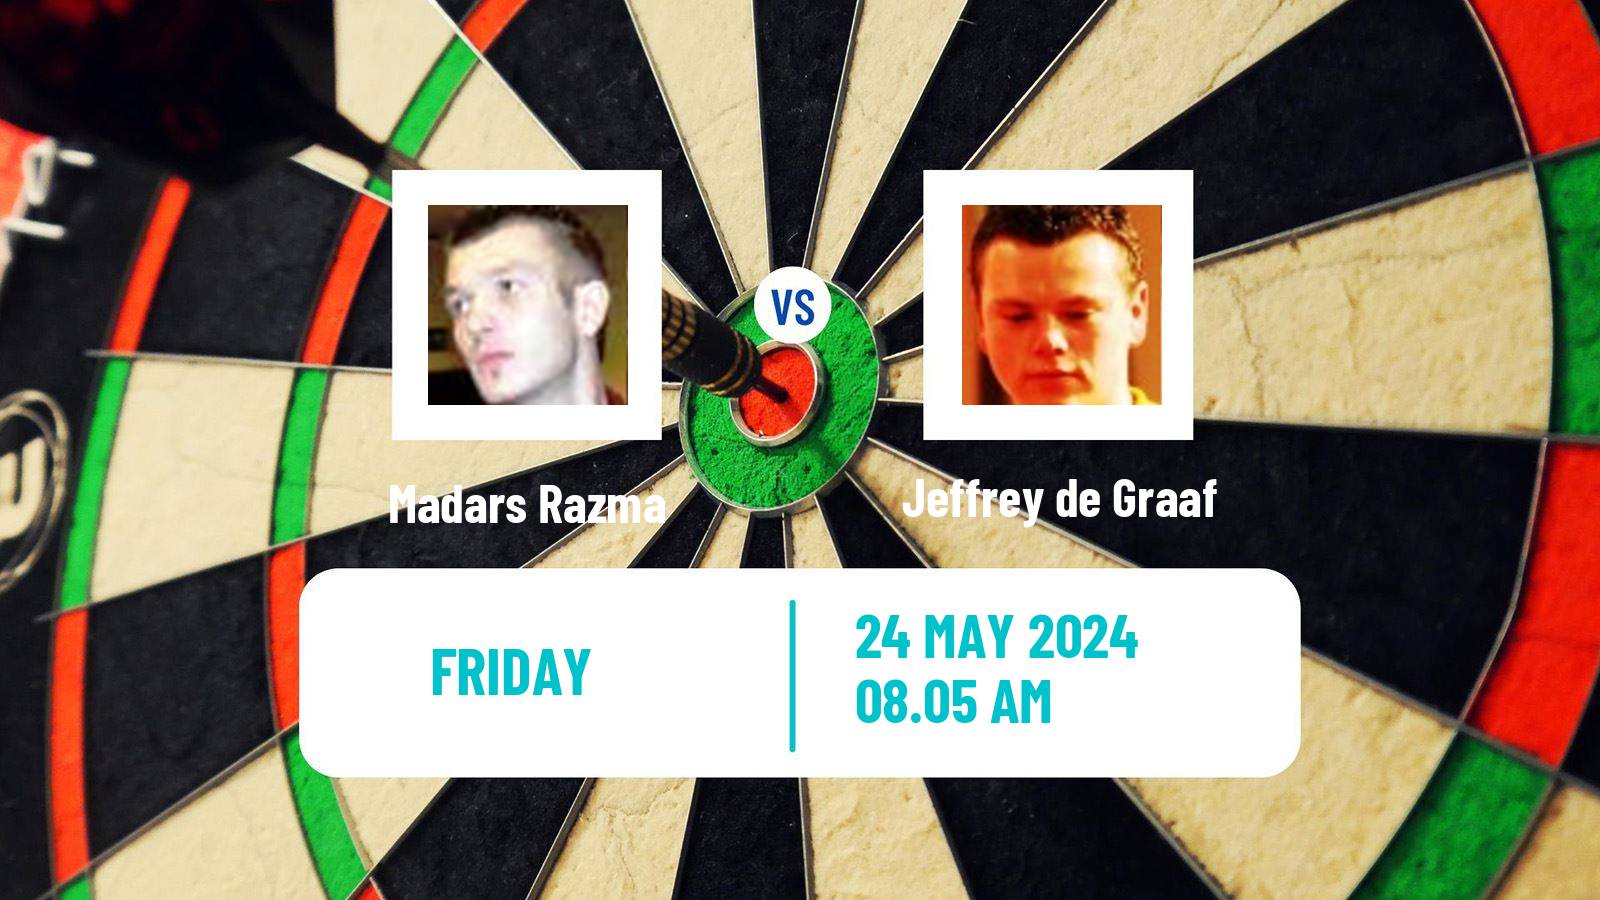 Darts European Tour 7 Madars Razma - Jeffrey de Graaf